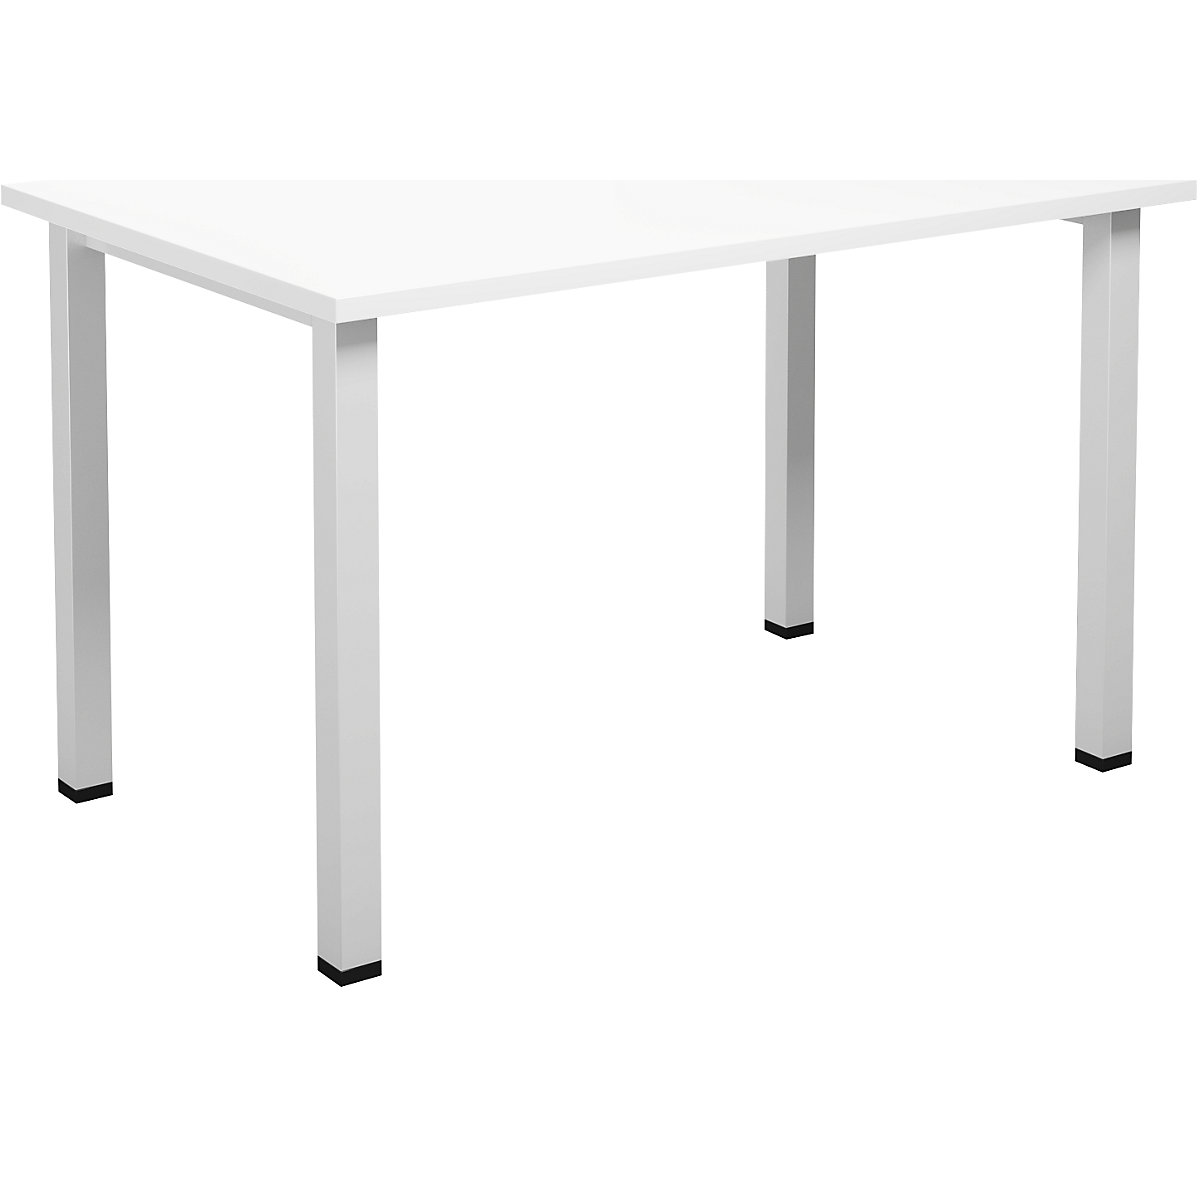 DUO-U multi-purpose desk, straight tabletop, WxD 1200 x 800 mm, white, white-4